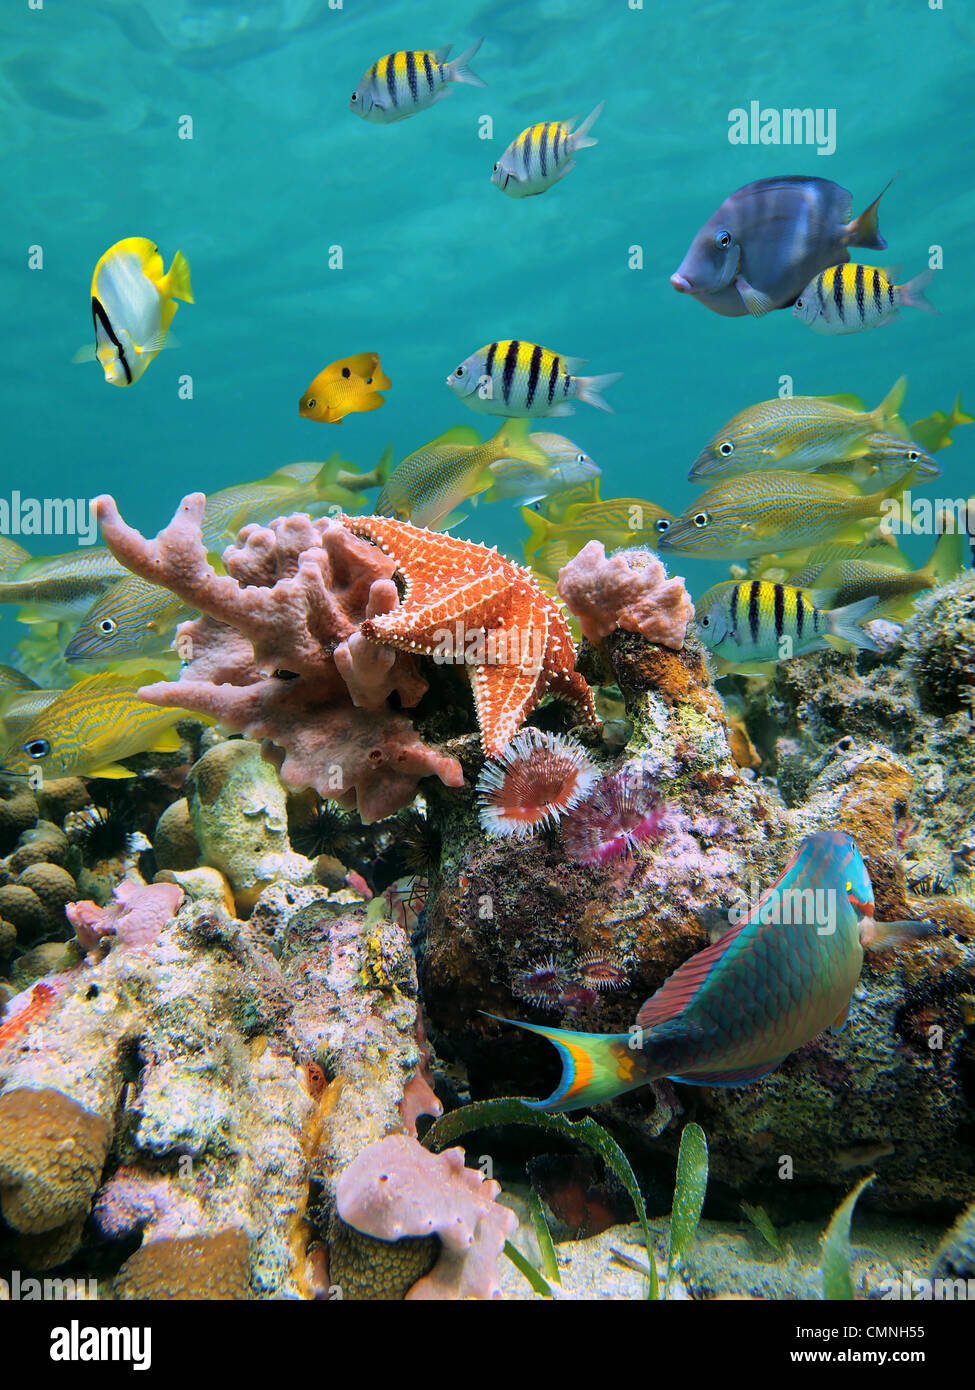 Ein Schwarm von bunte tropische Fische, Seesterne, Schwämme und marinen Würmer in einem Korallenriff des karibischen Meeres Stockfoto